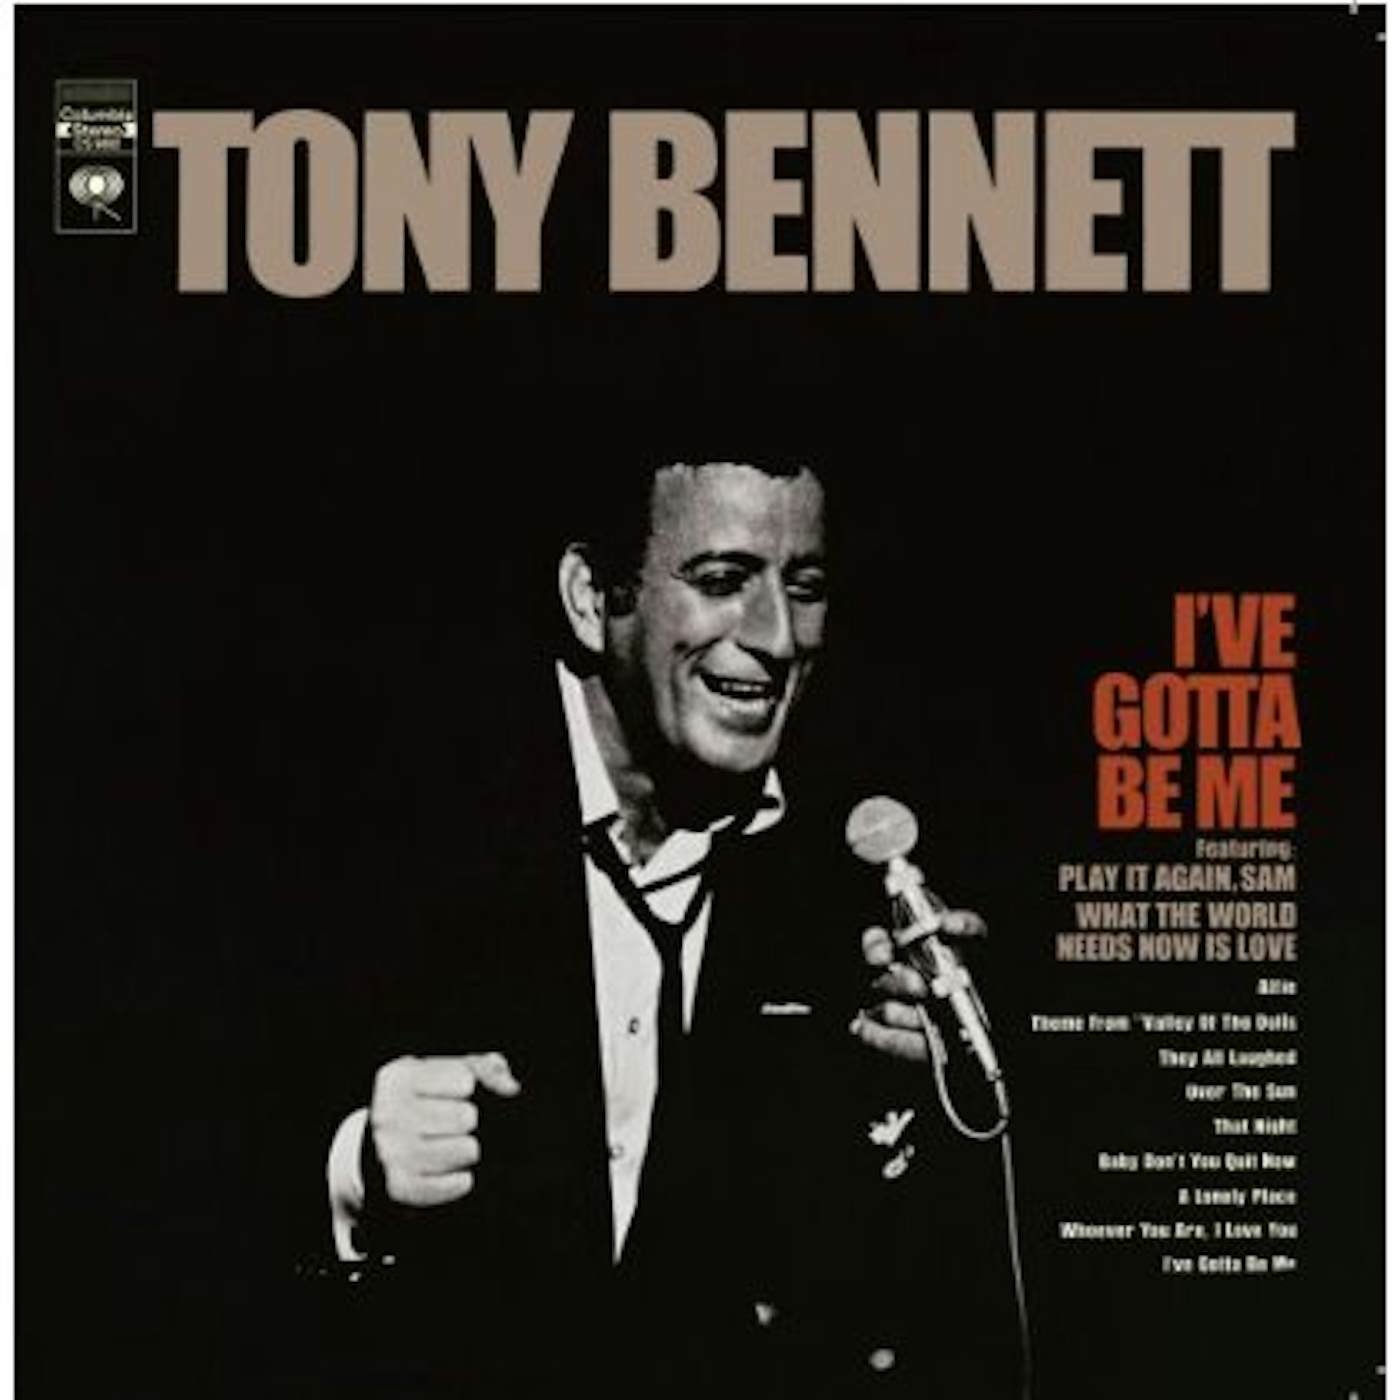 Tony Bennett I'VE GOTTA BE ME CD